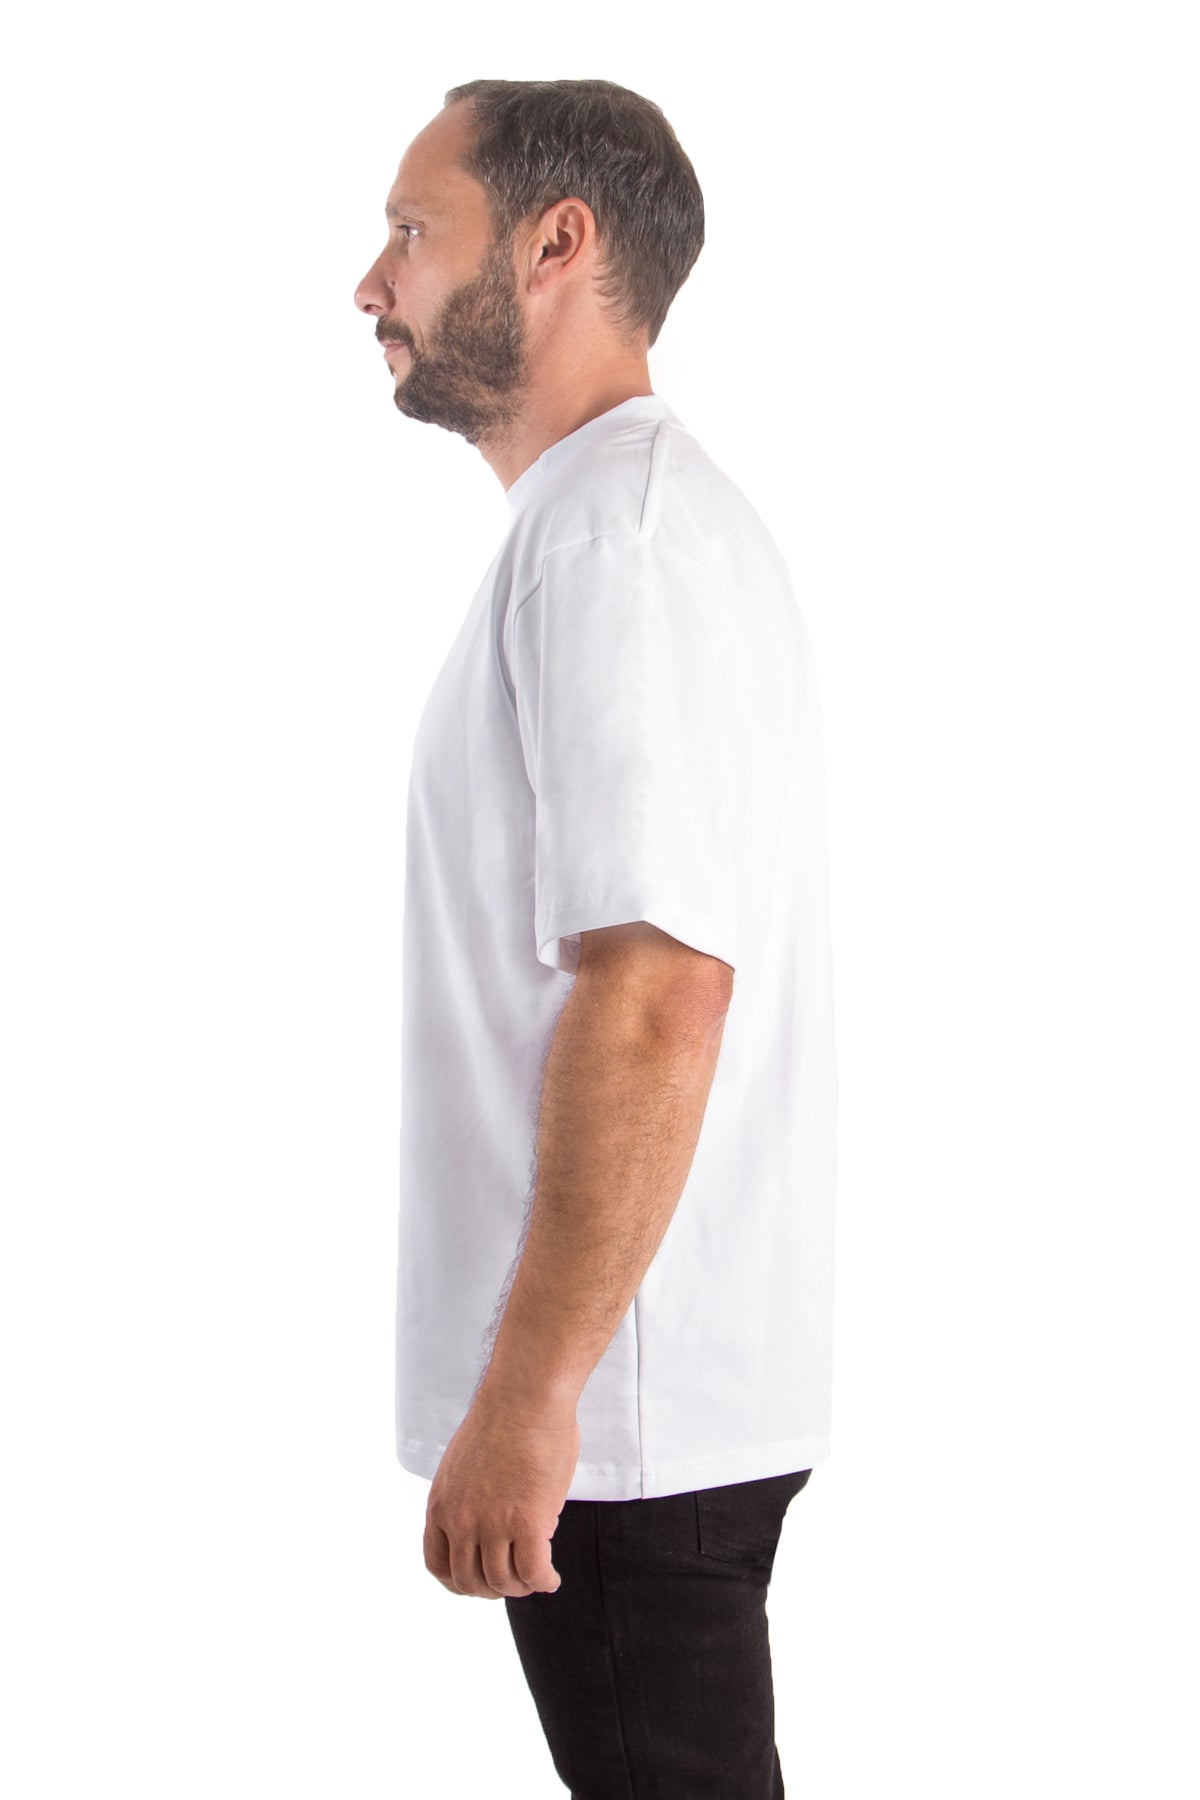 T-Shirt Oversized (10er-Pack) - nightblue